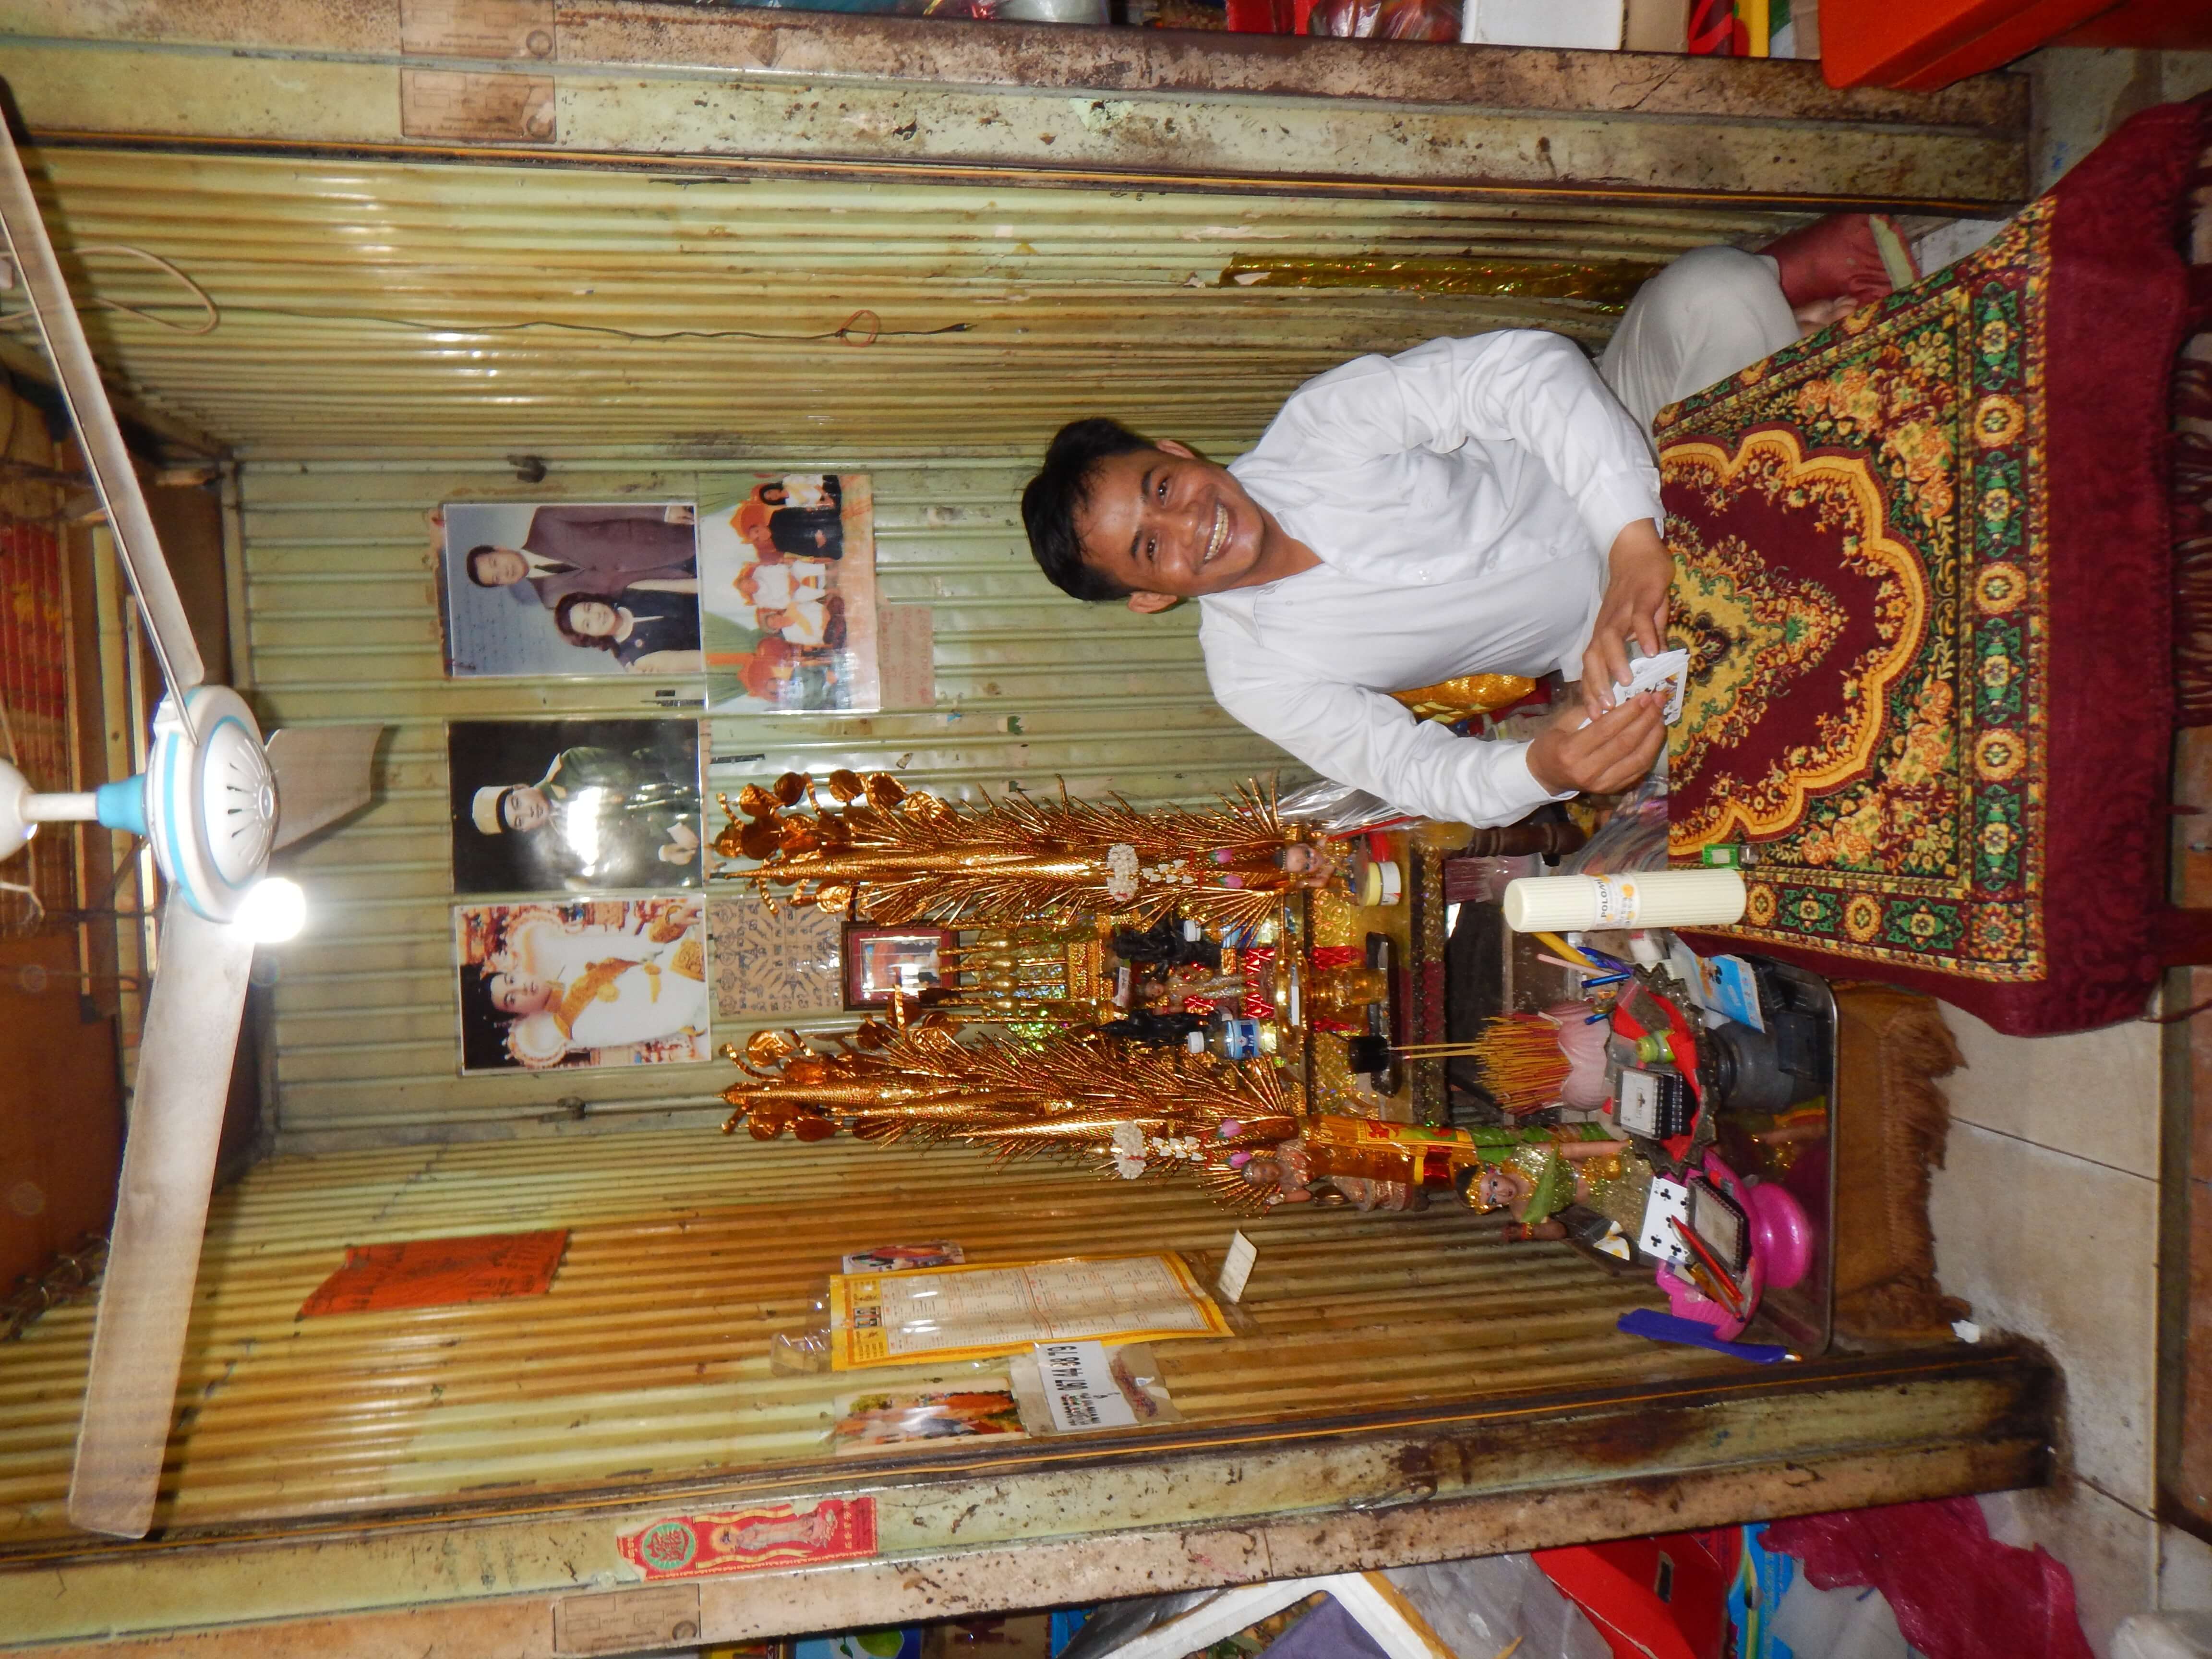 Tarot Card Reader in Phnom Penh